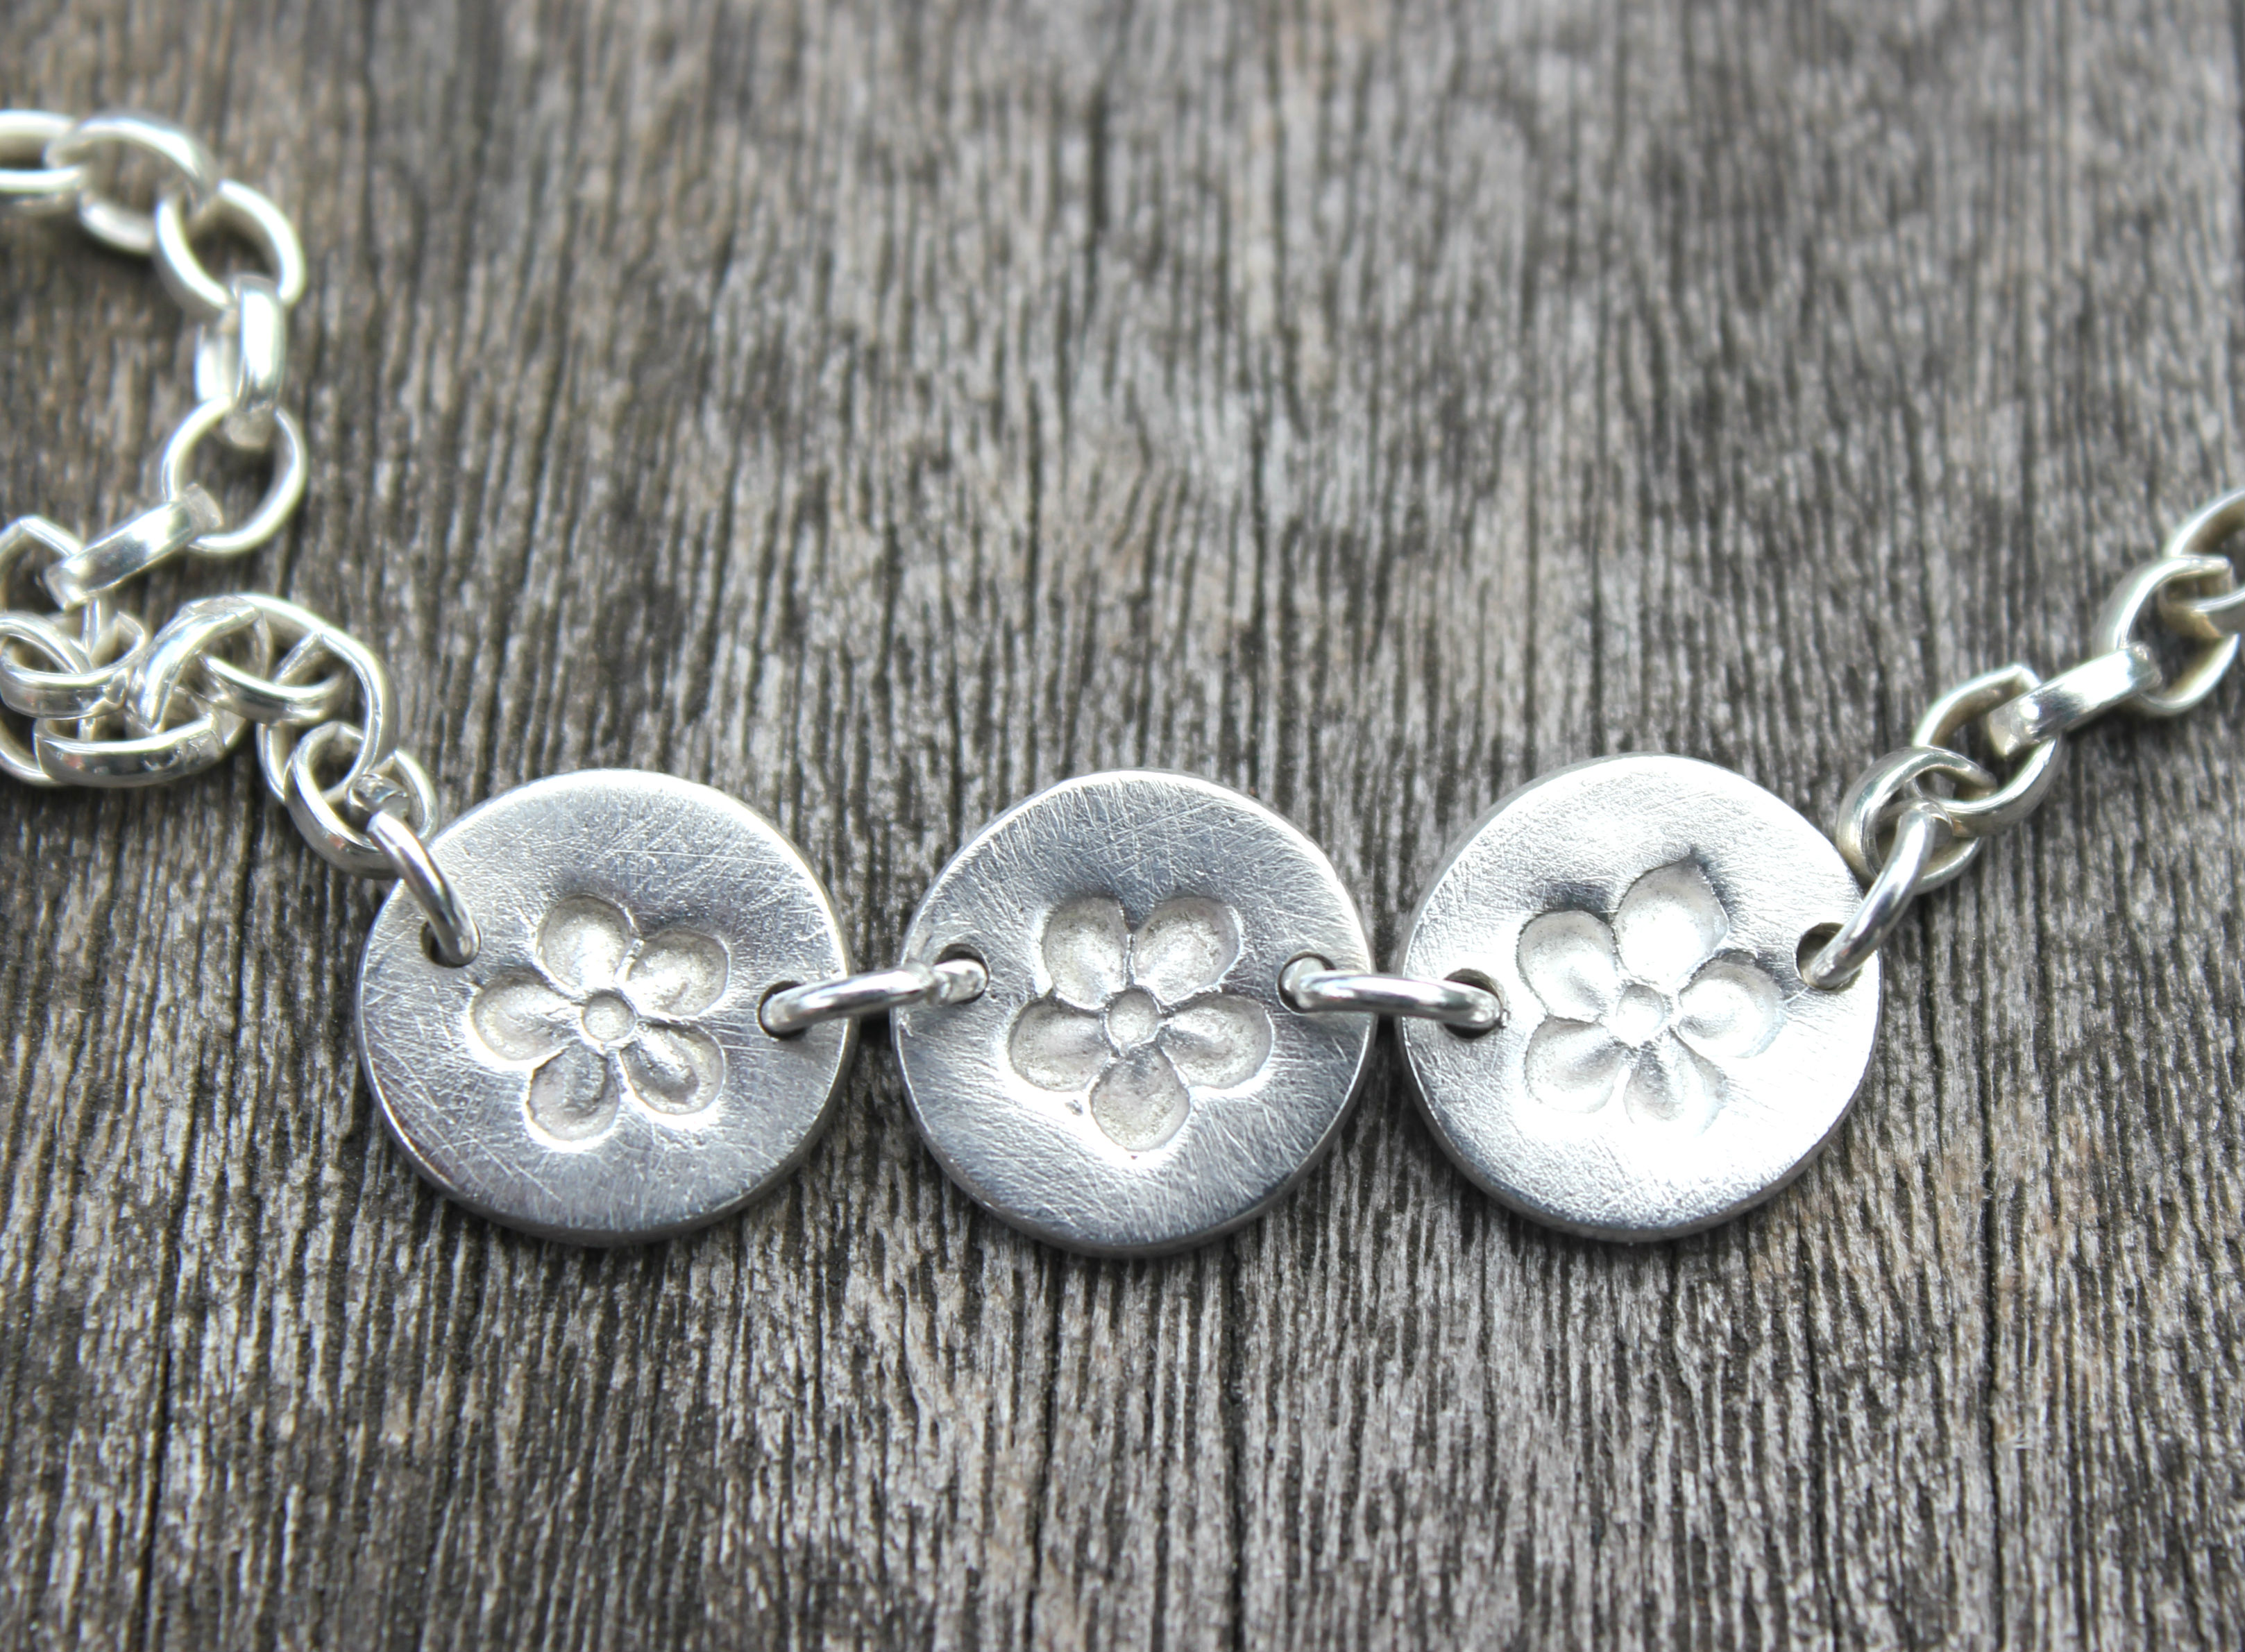 Daisy chain bracelet by little silver hedgehog.JPG